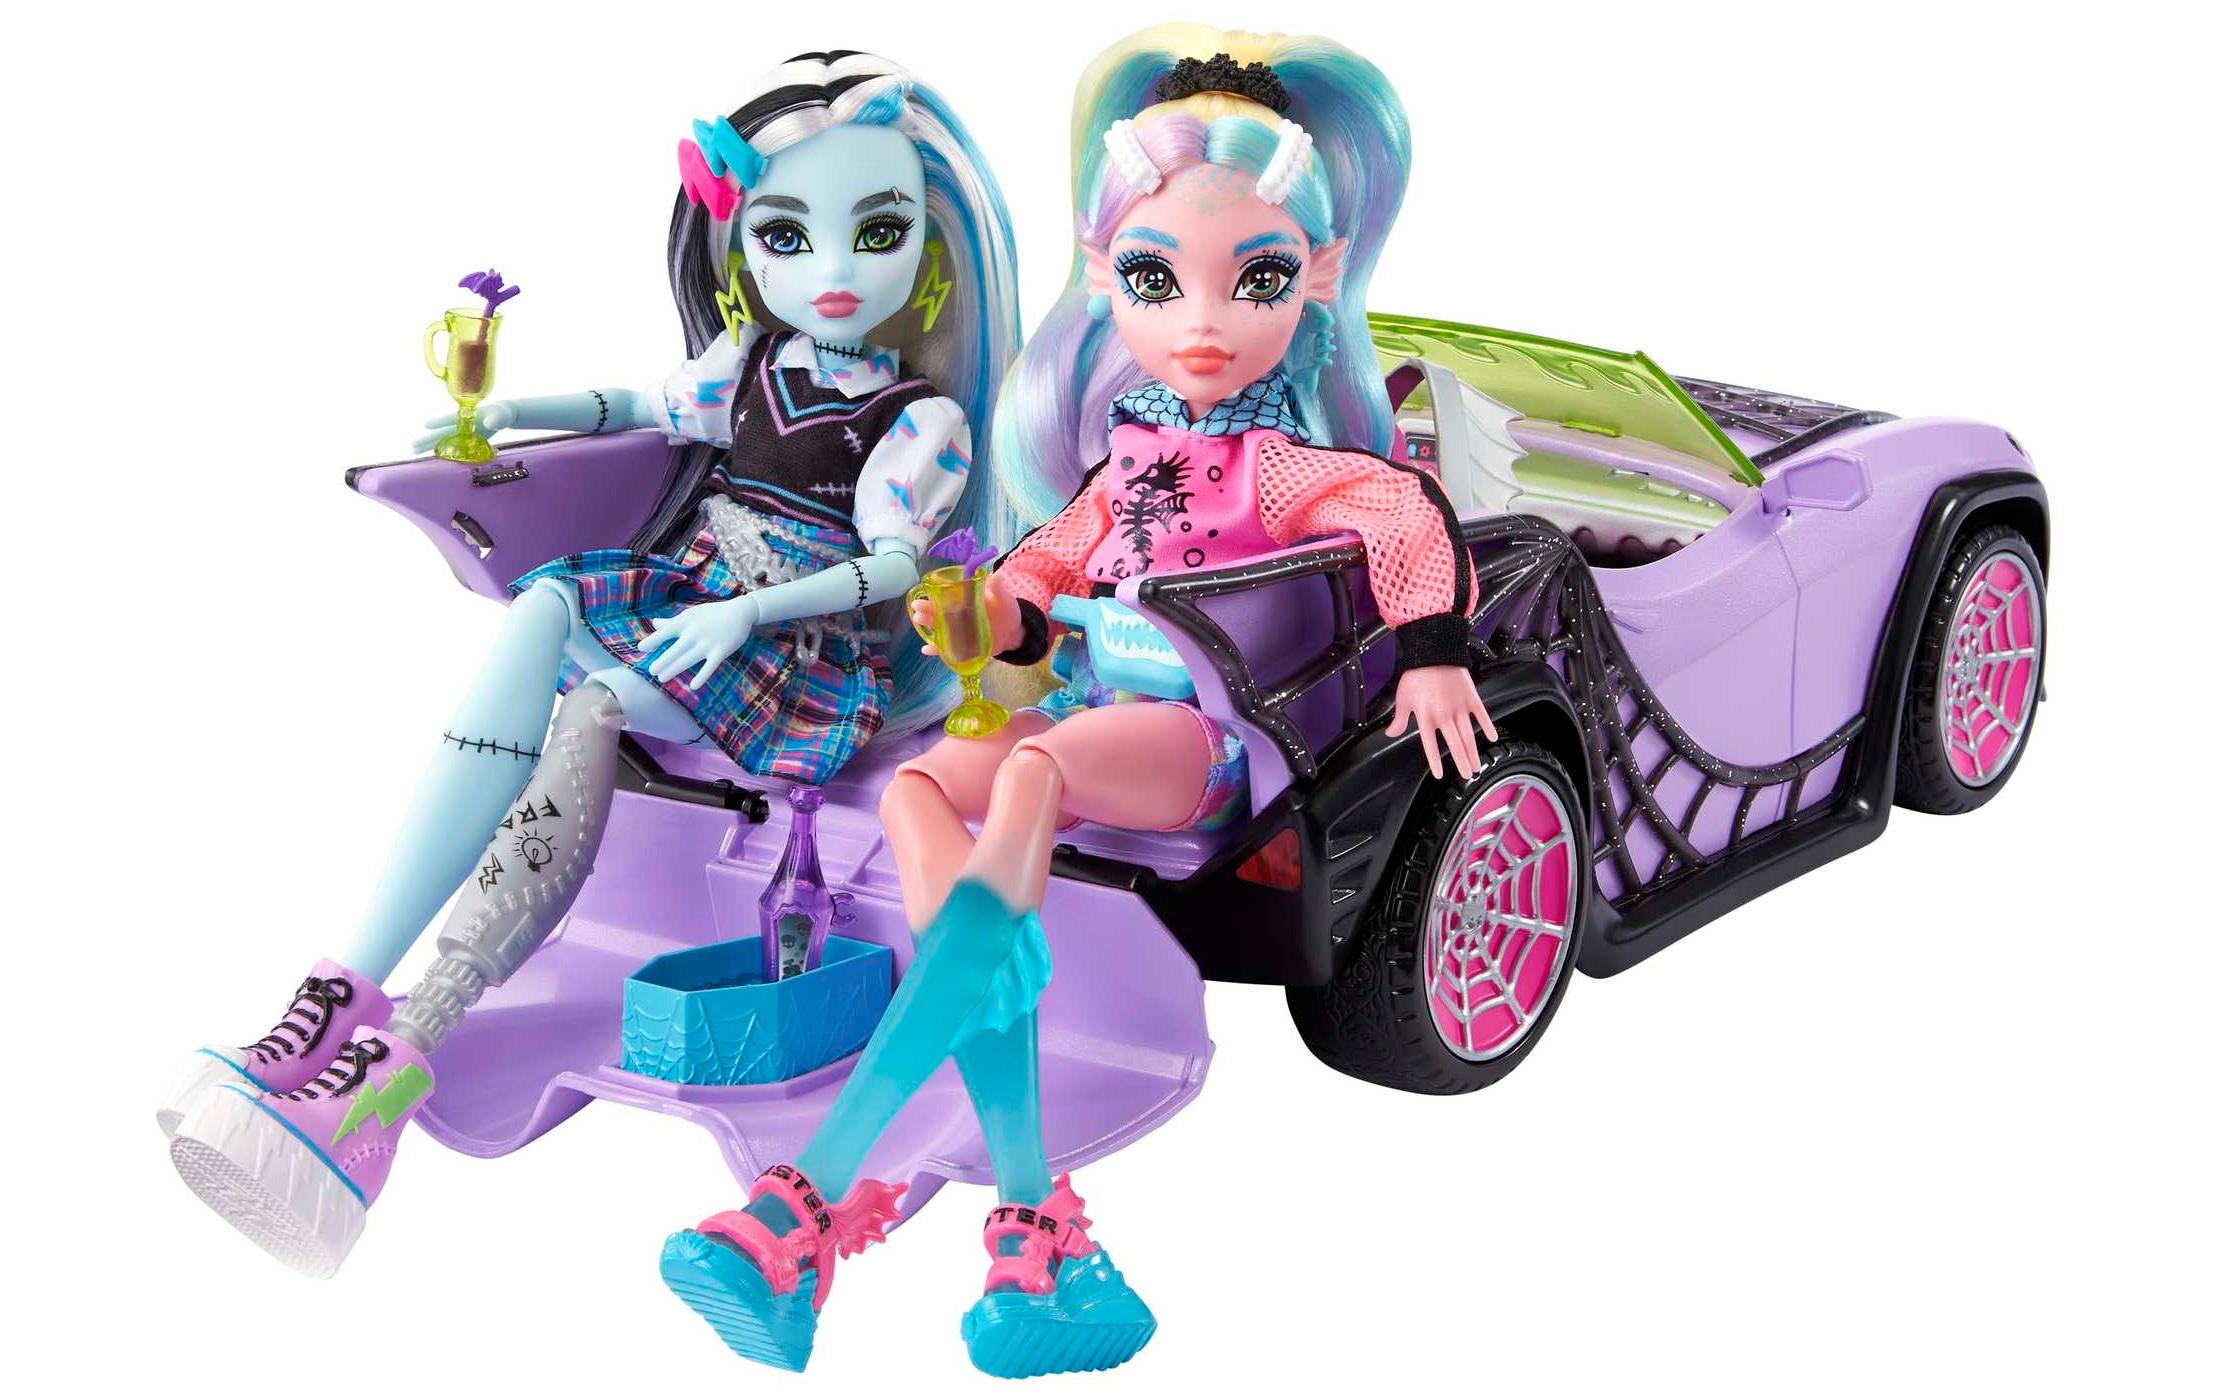 Monster High Monster High Vehicle